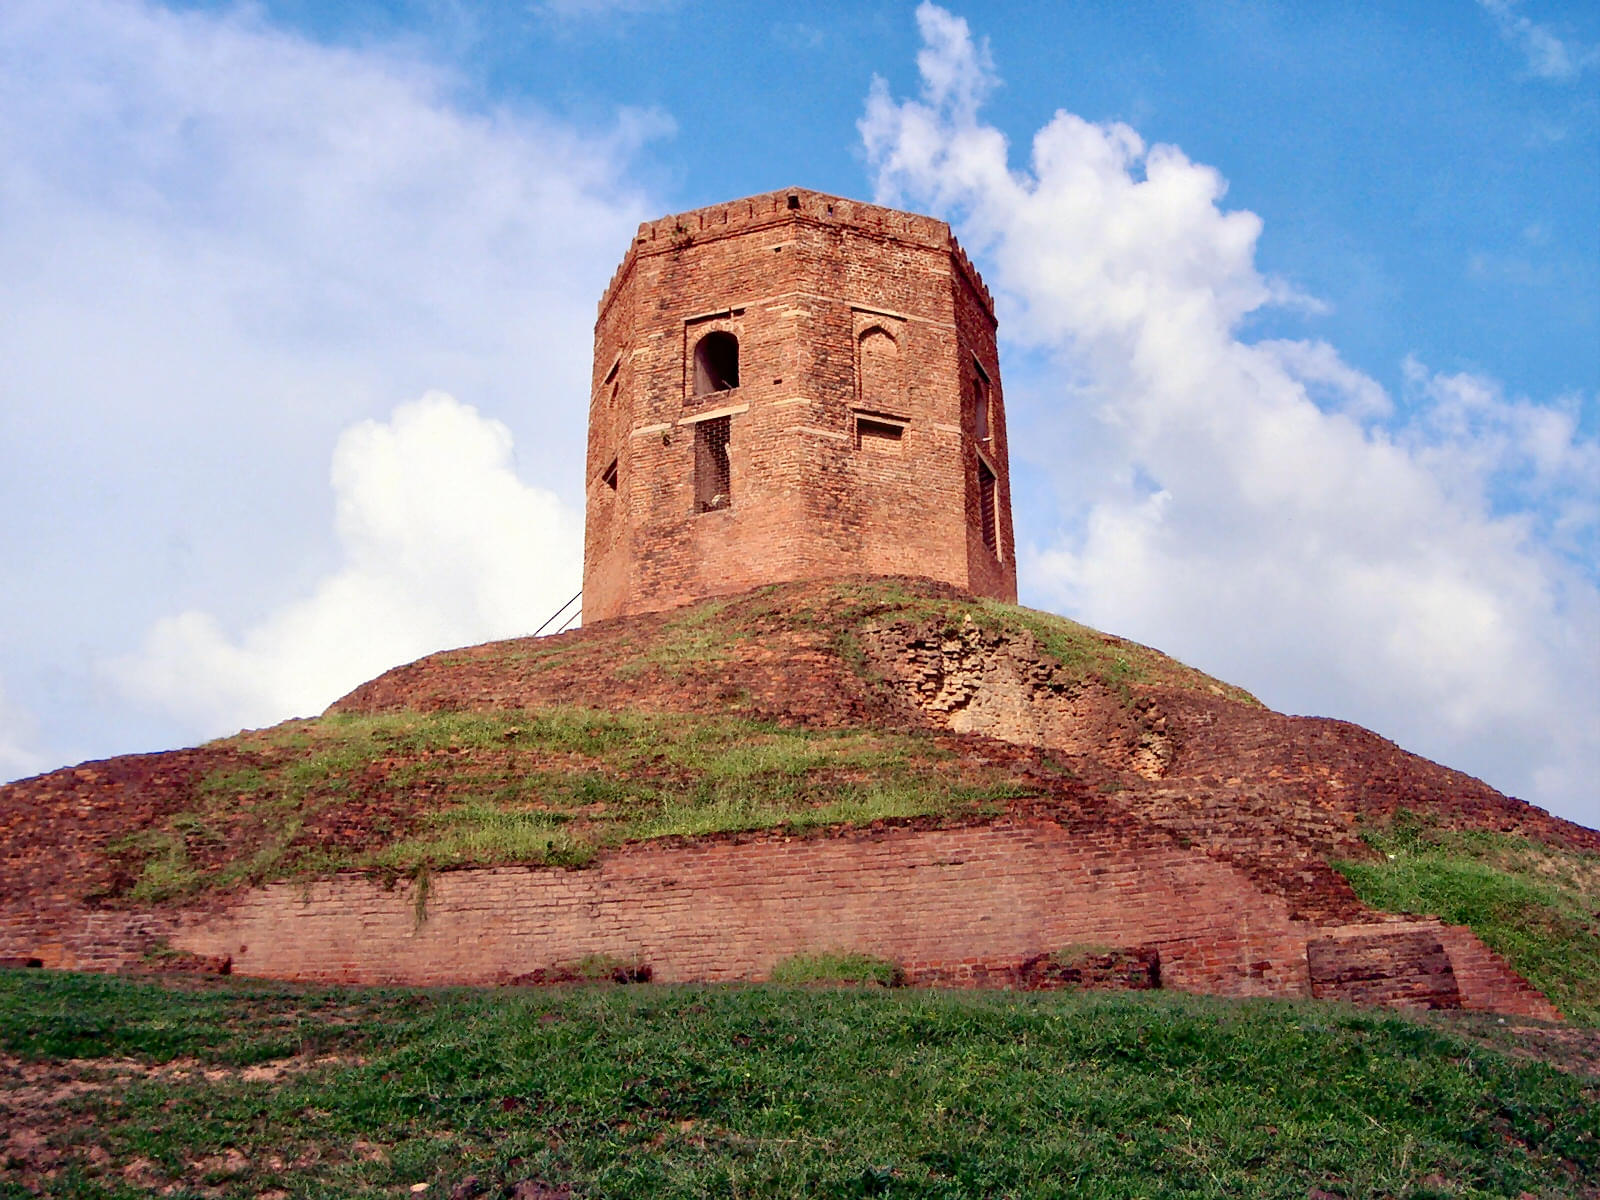 Chaukhandi Stupa Overview